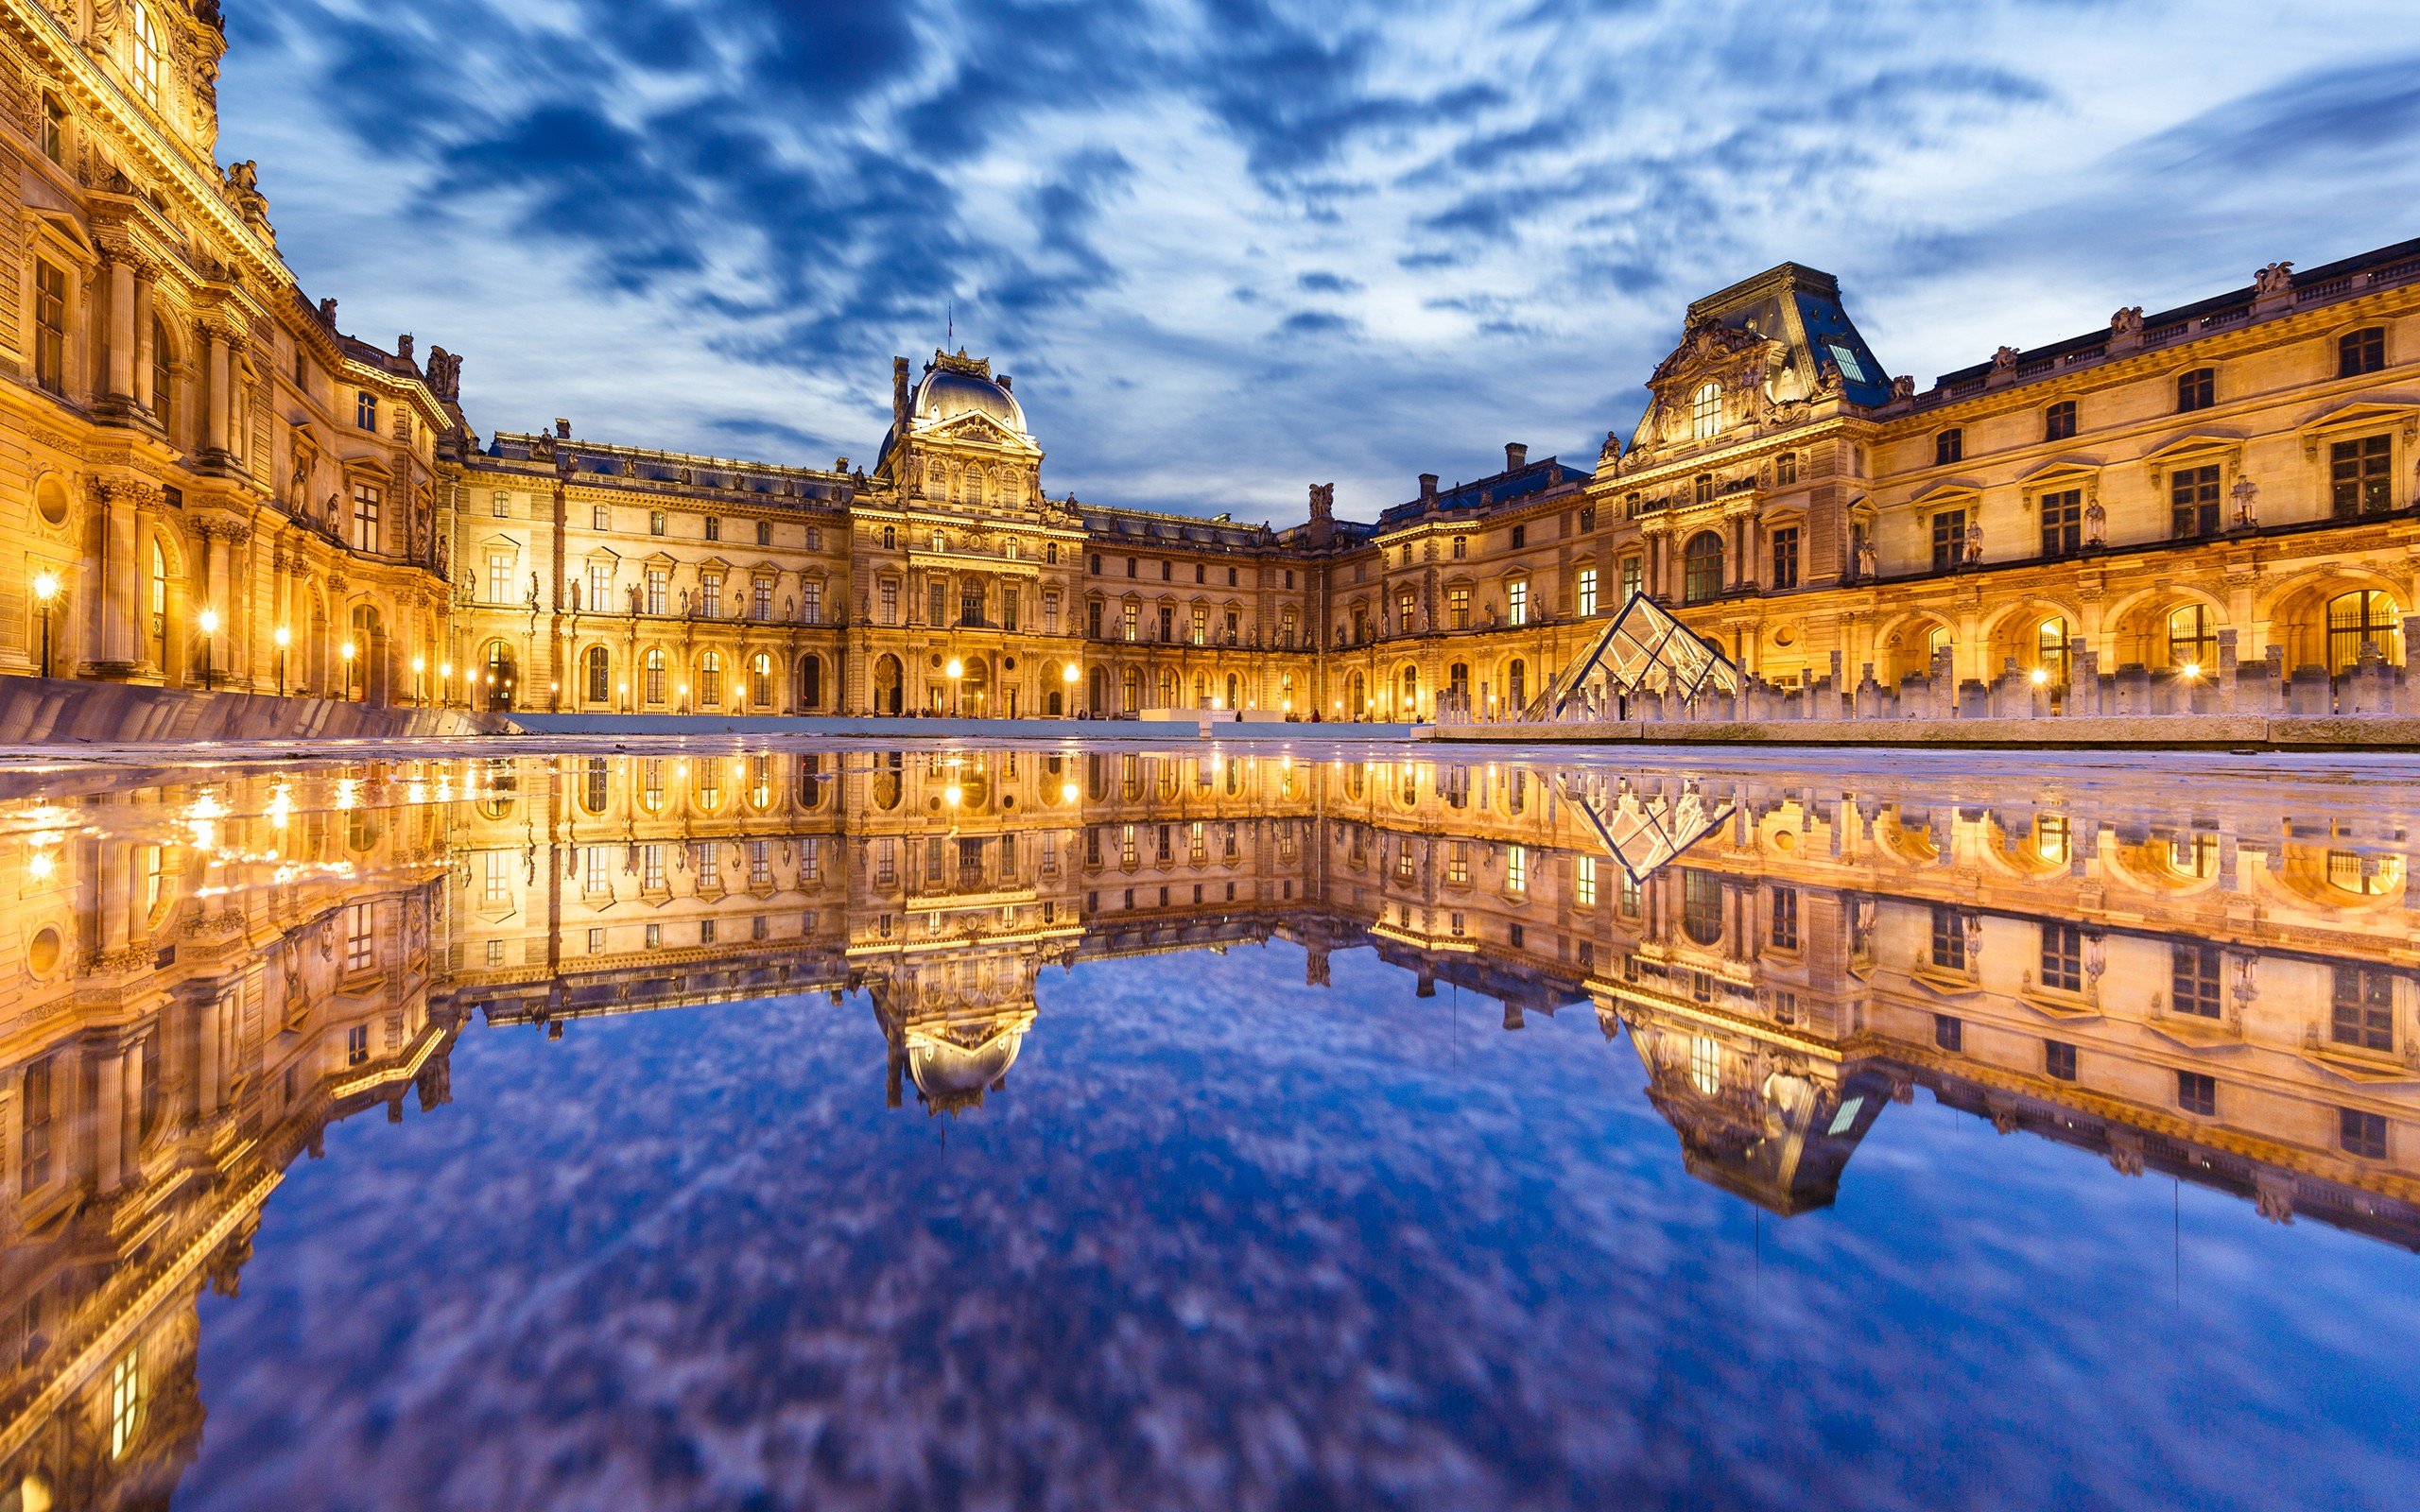 Le Louvre , HD Wallpaper & Backgrounds